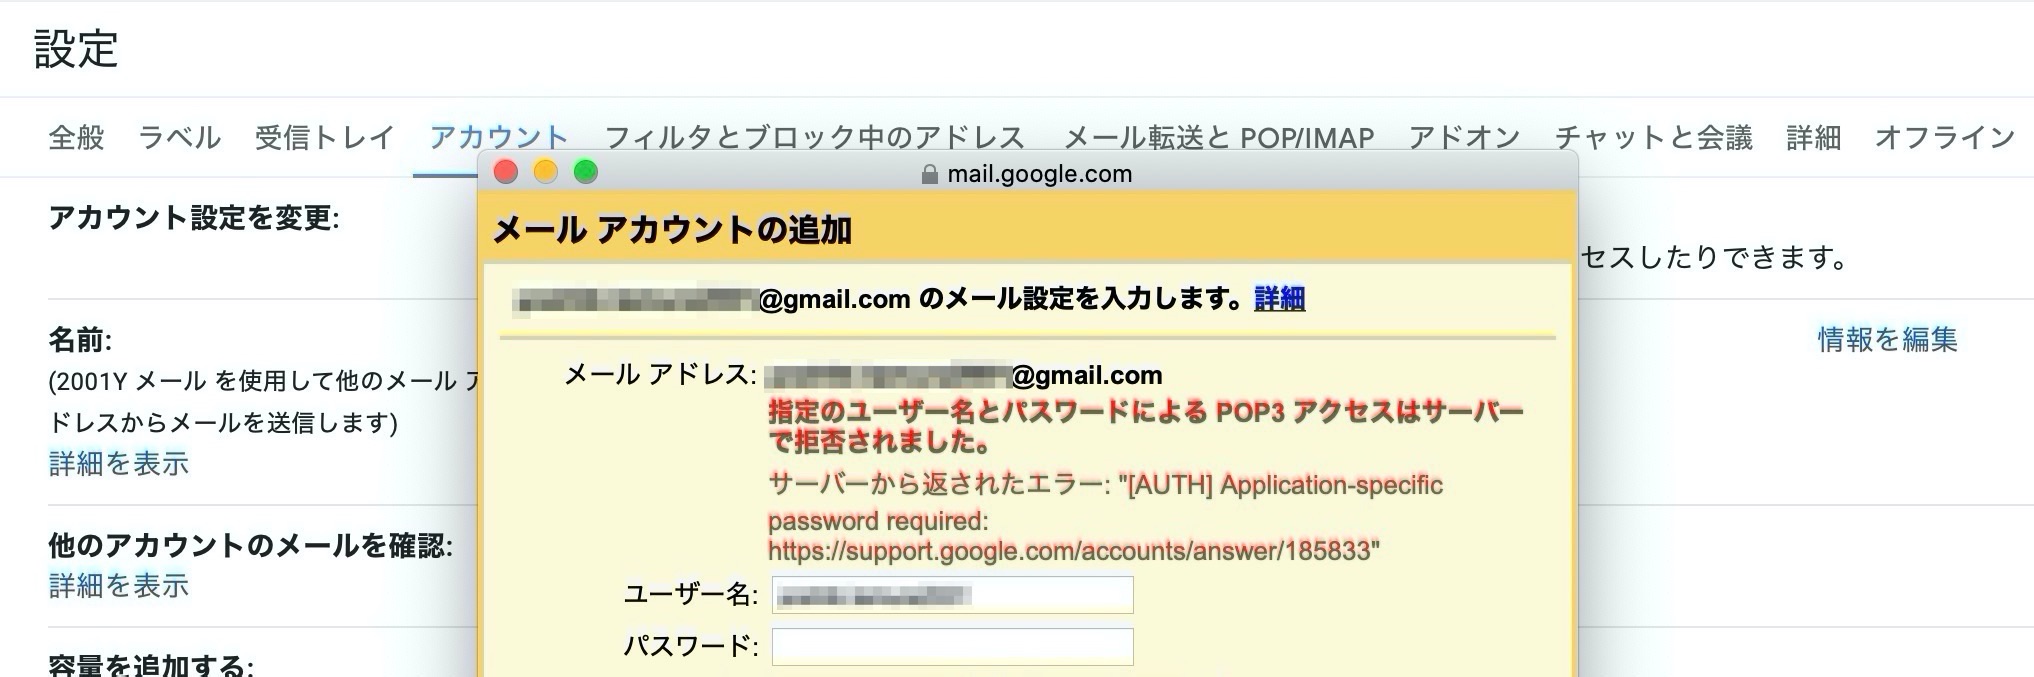 指定のユーザー名とパスワードによるPOP3アクセスはサーバーで拒否されました。サーバーから返されたエラー: "[AUTH] Application-specific password required: https://support.google.com/accounts/answer/185833"